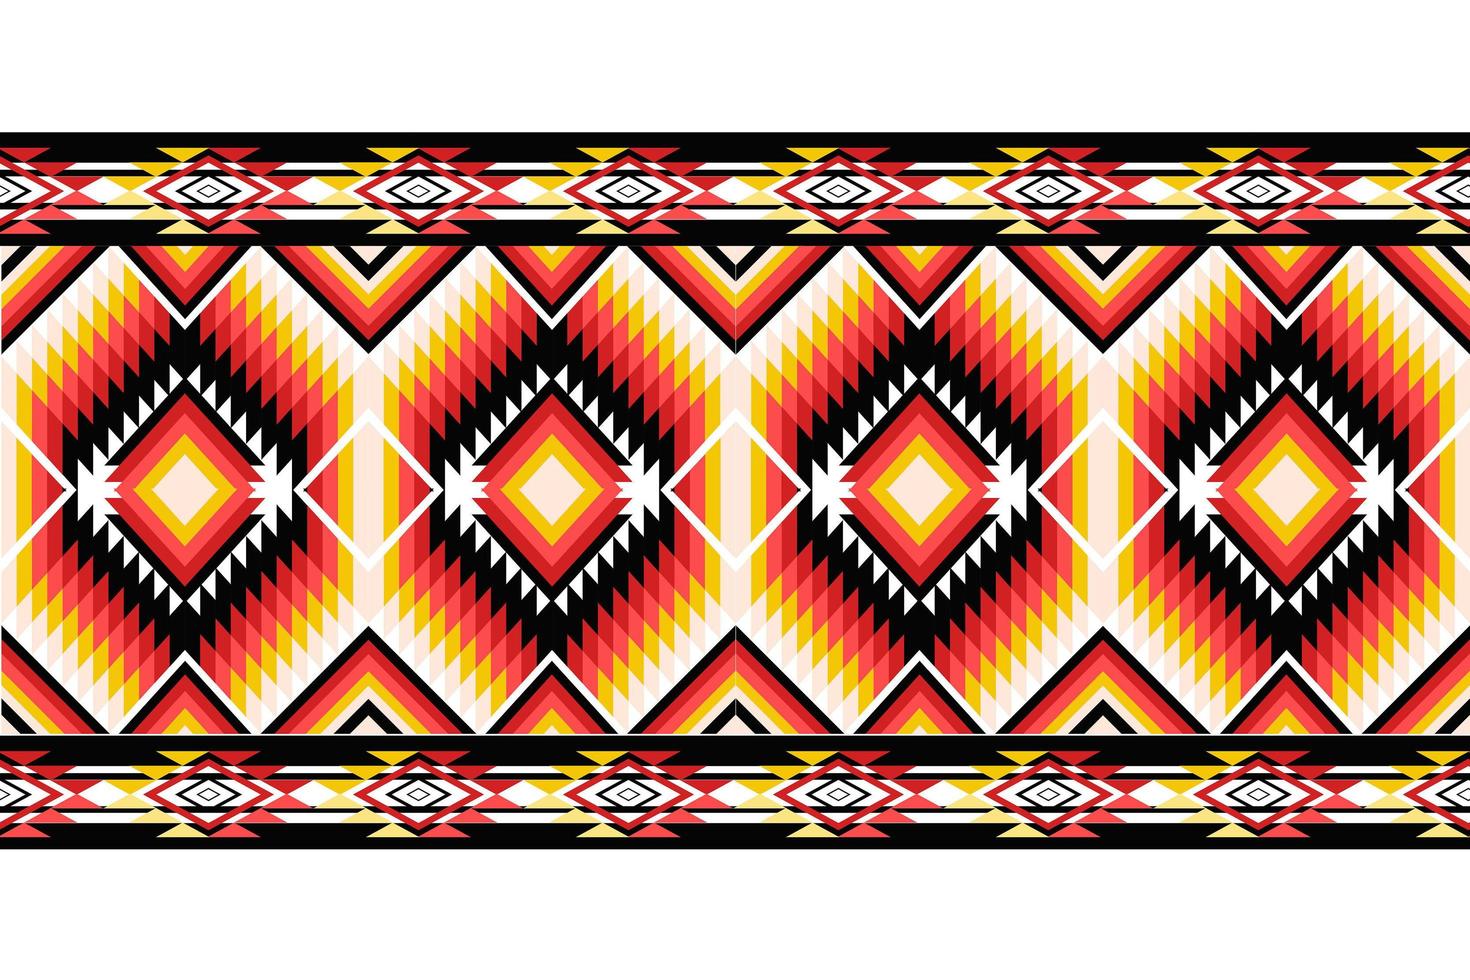 geometrische ethnische Muster orientalisch. nahtloses Muster. Design für Stoff, Vorhang, Hintergrund, Teppich, Tapete, Kleidung, Verpackung, Batik, Stoff, Vektorgrafik. Muster styl vektor